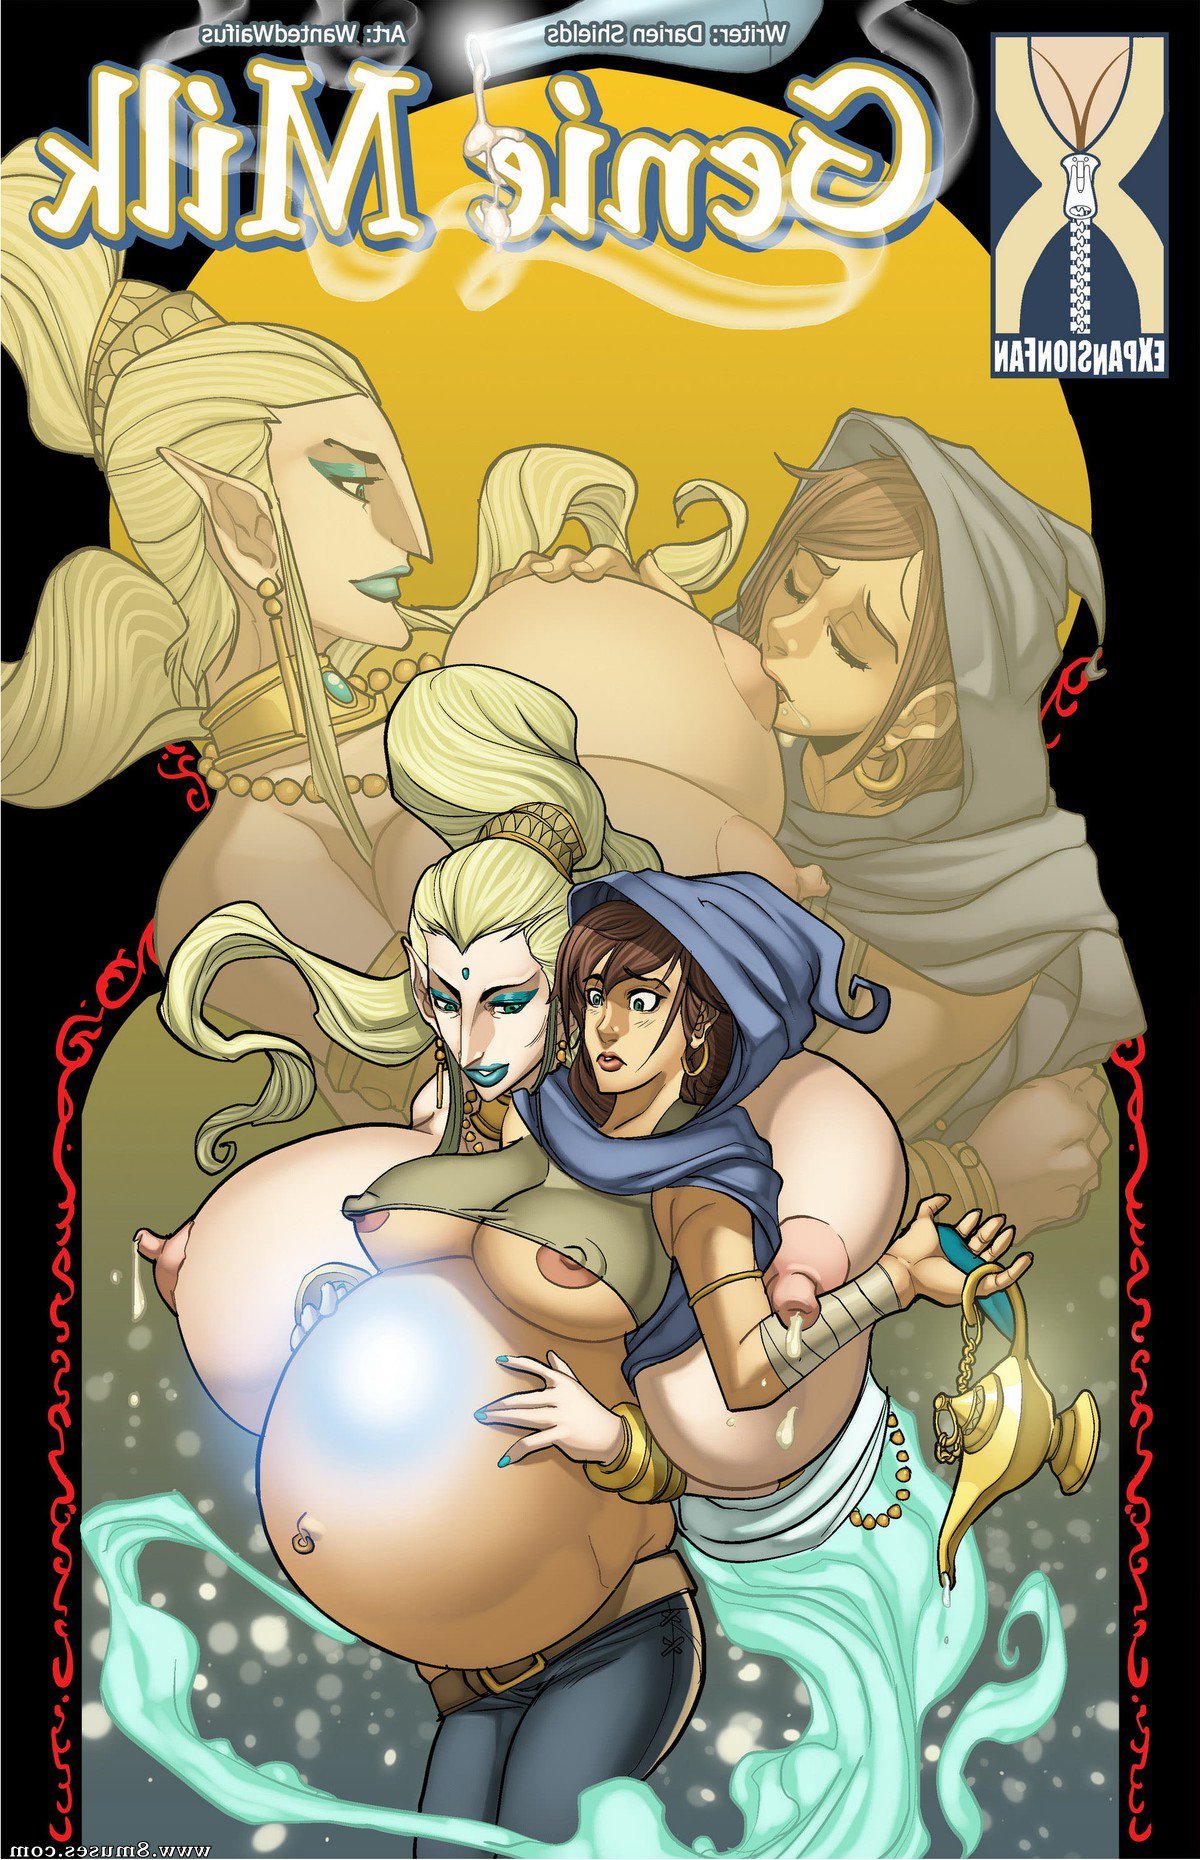 Expansionfan-Comics/Genie-Milk/Issue-1 Genie_Milk_-_Issue_1.jpg